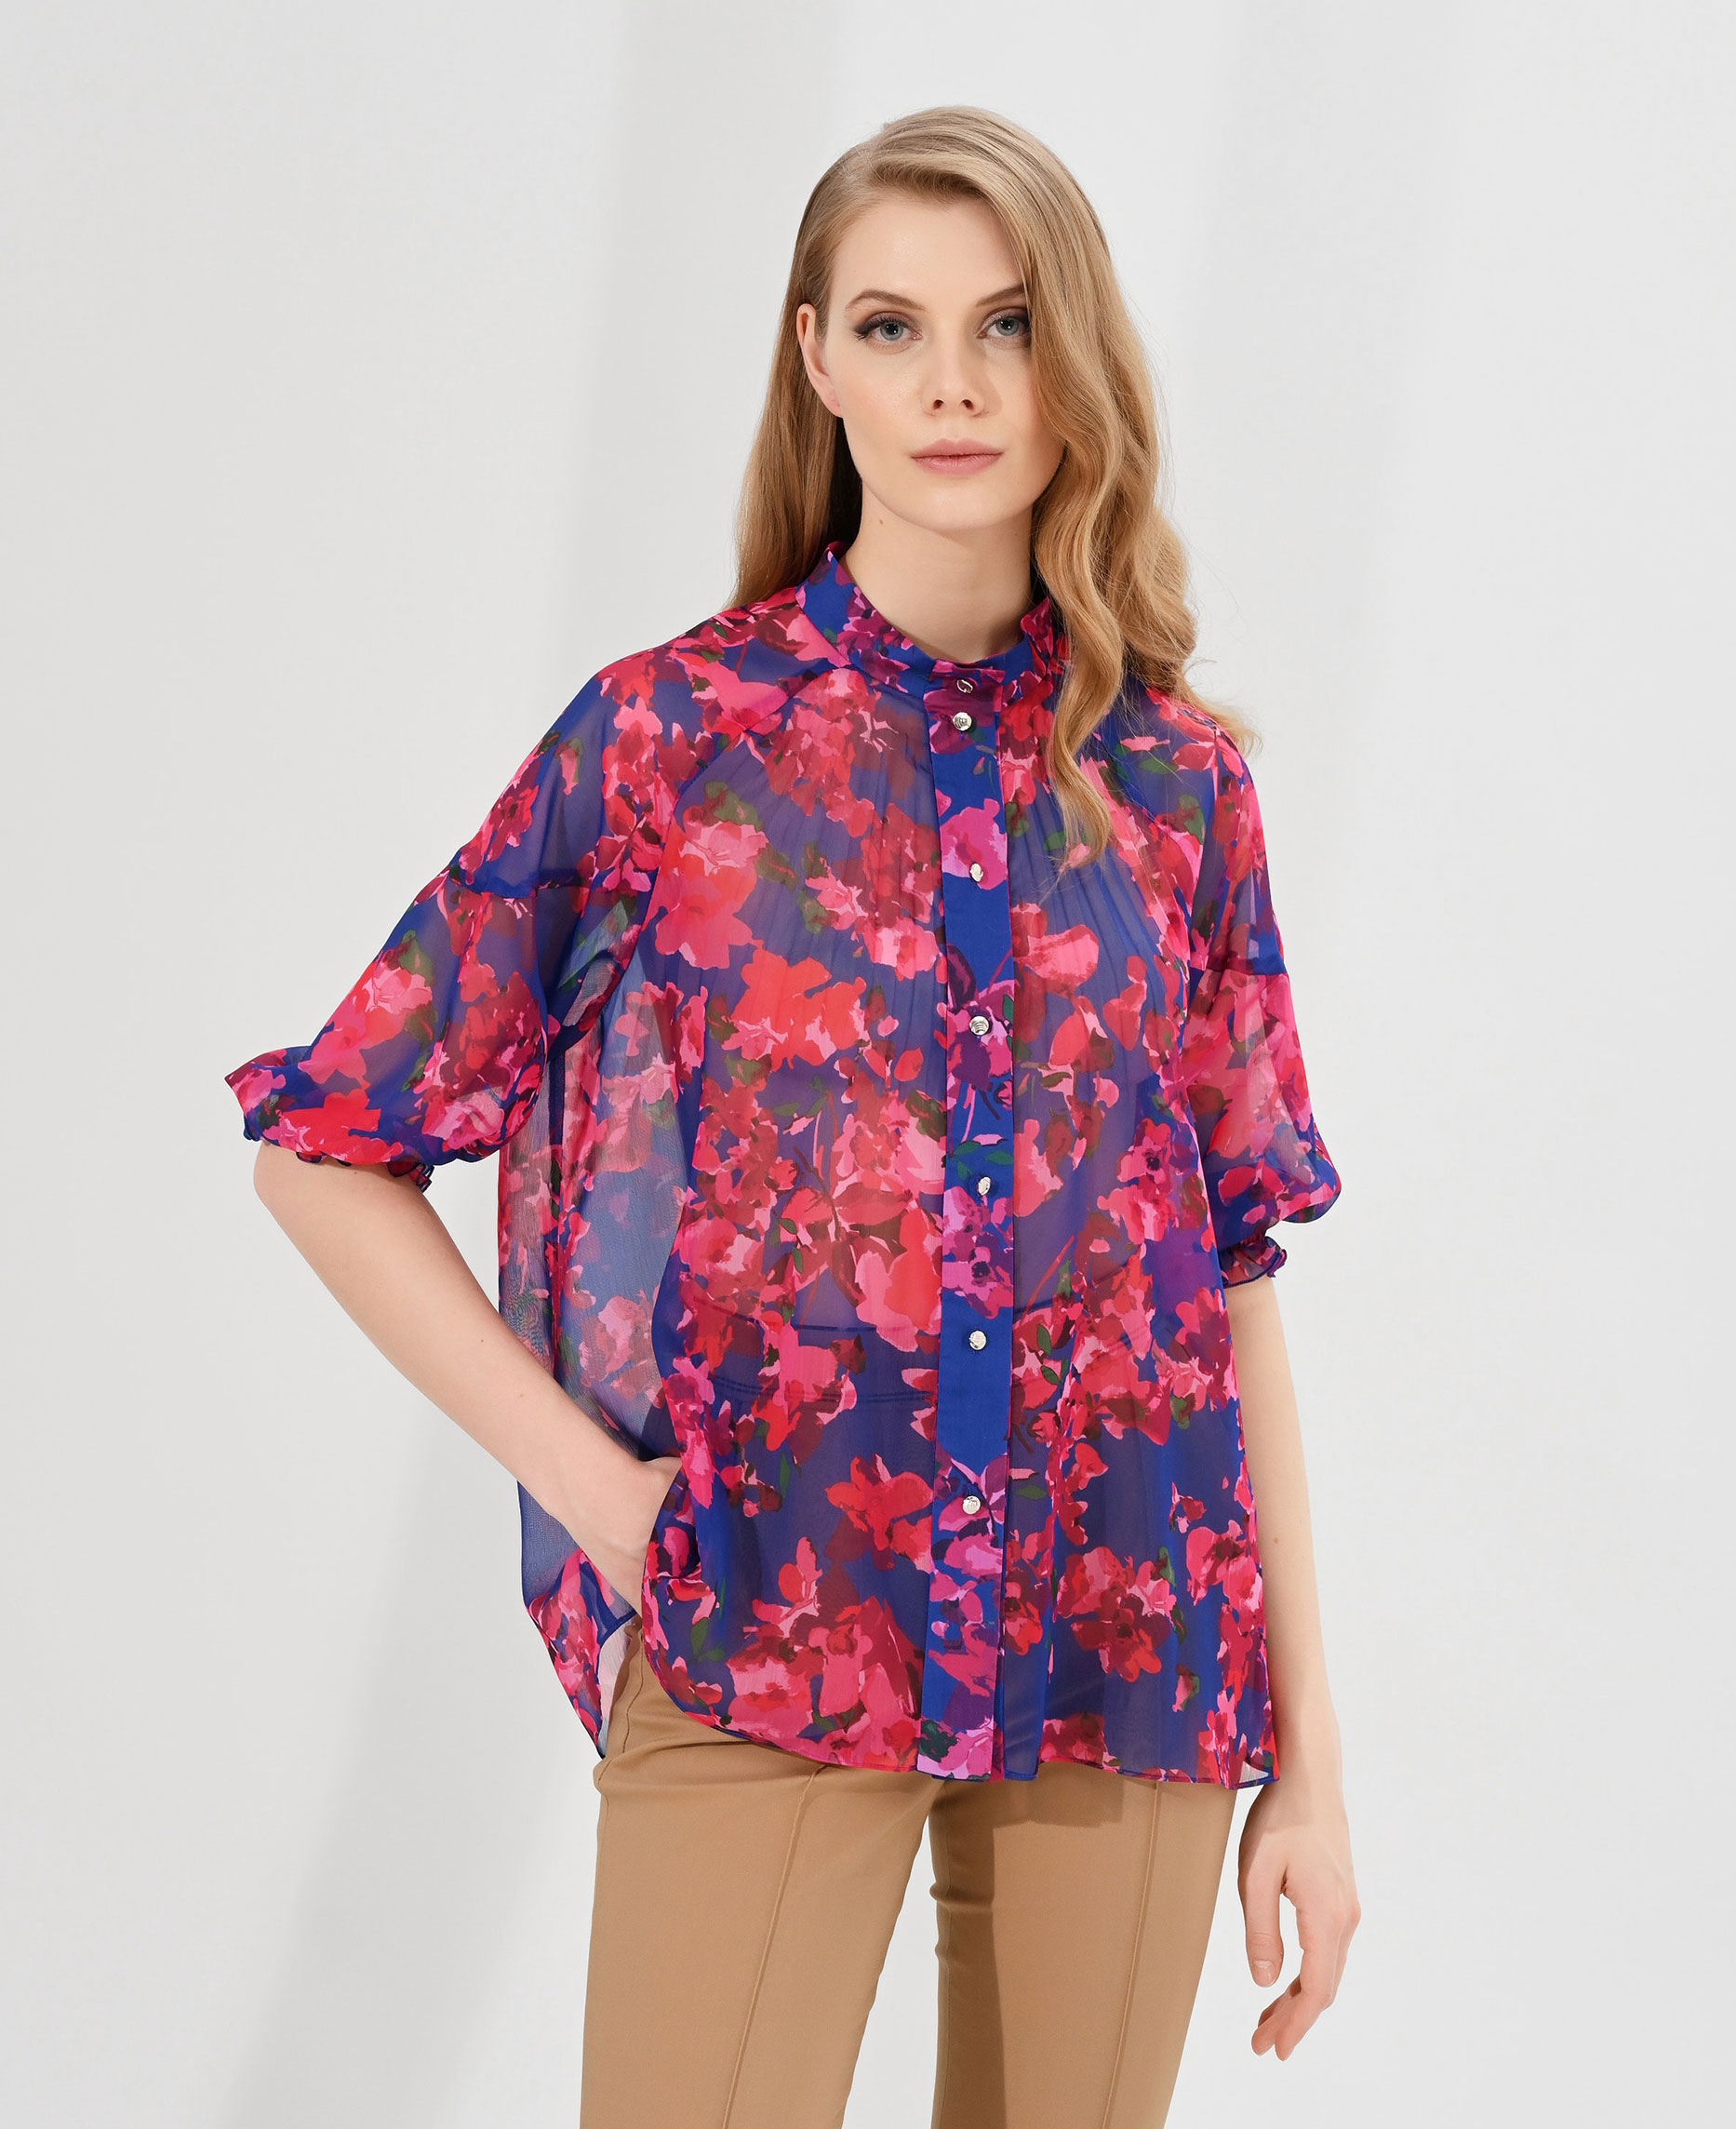 Полупрозрачная блузка с воротником-стойкой Цвет Мультиколор